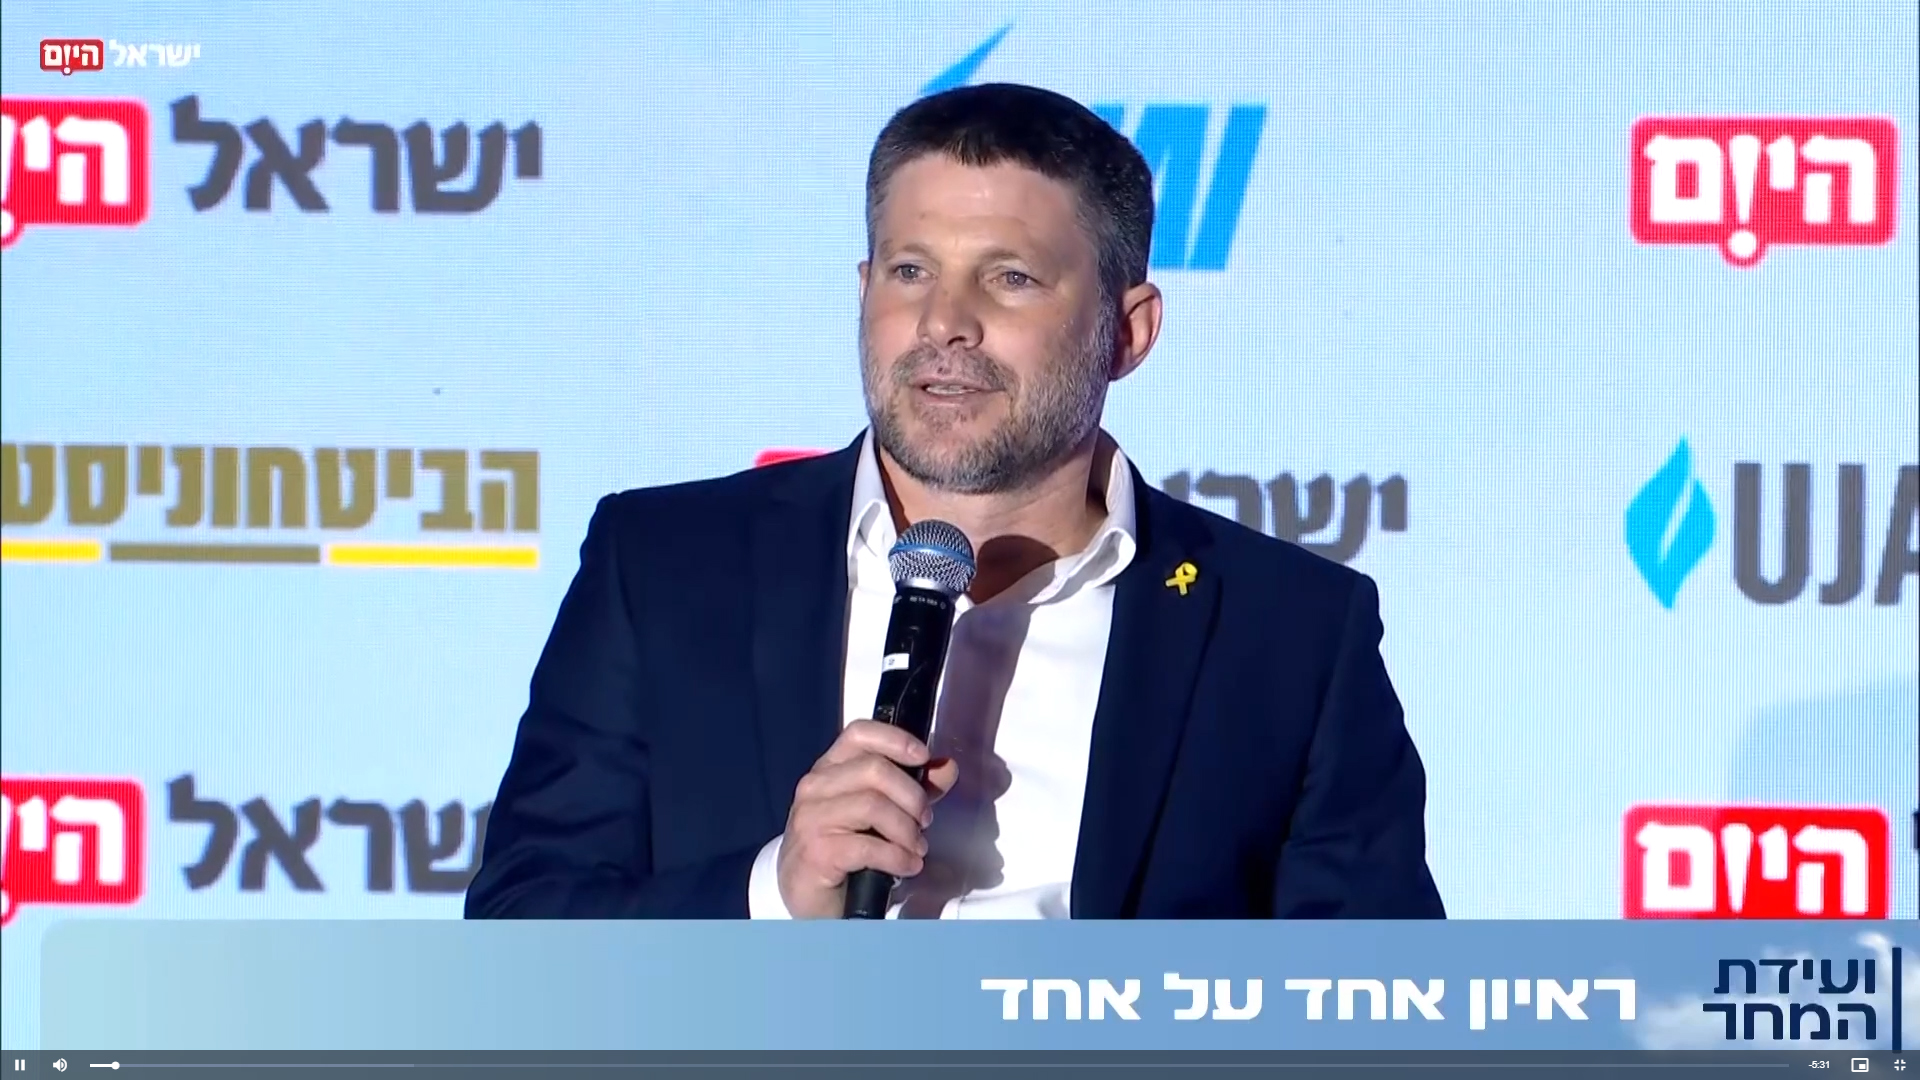 שר האוצר בצלאל סמוטריץ' בכנס "ישראל מחר" של ישראל היום (צילום מסך מהשידור החי)